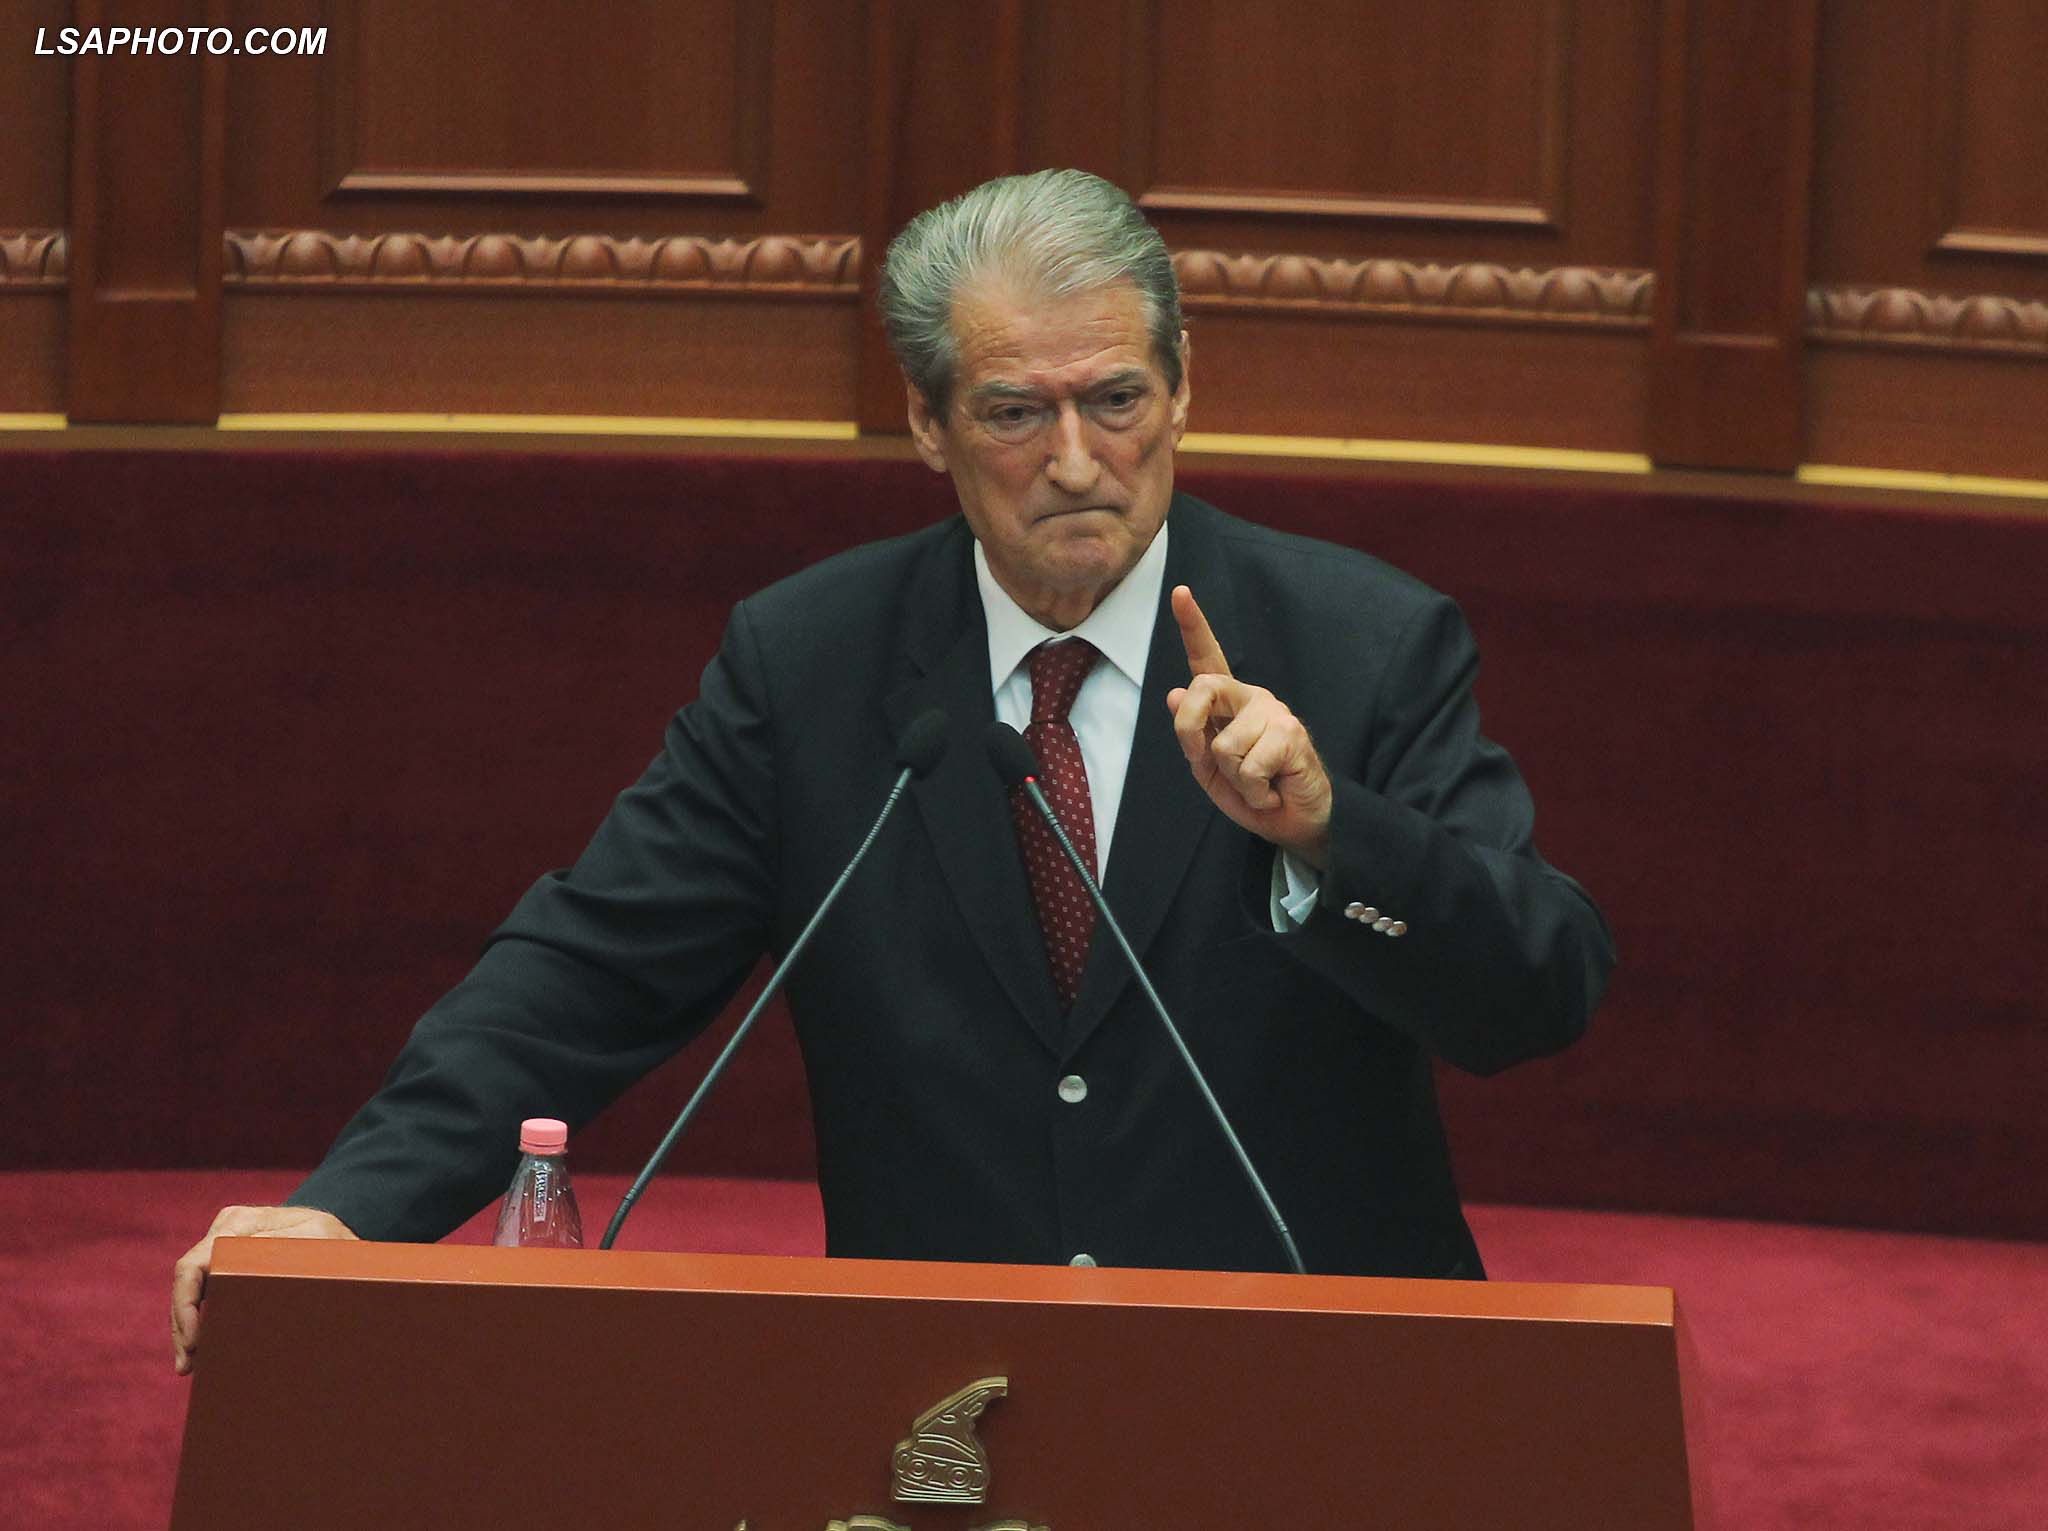 Ish Kryeministri, Sali Berisha, duke folur gjate nje seance parlamentare321